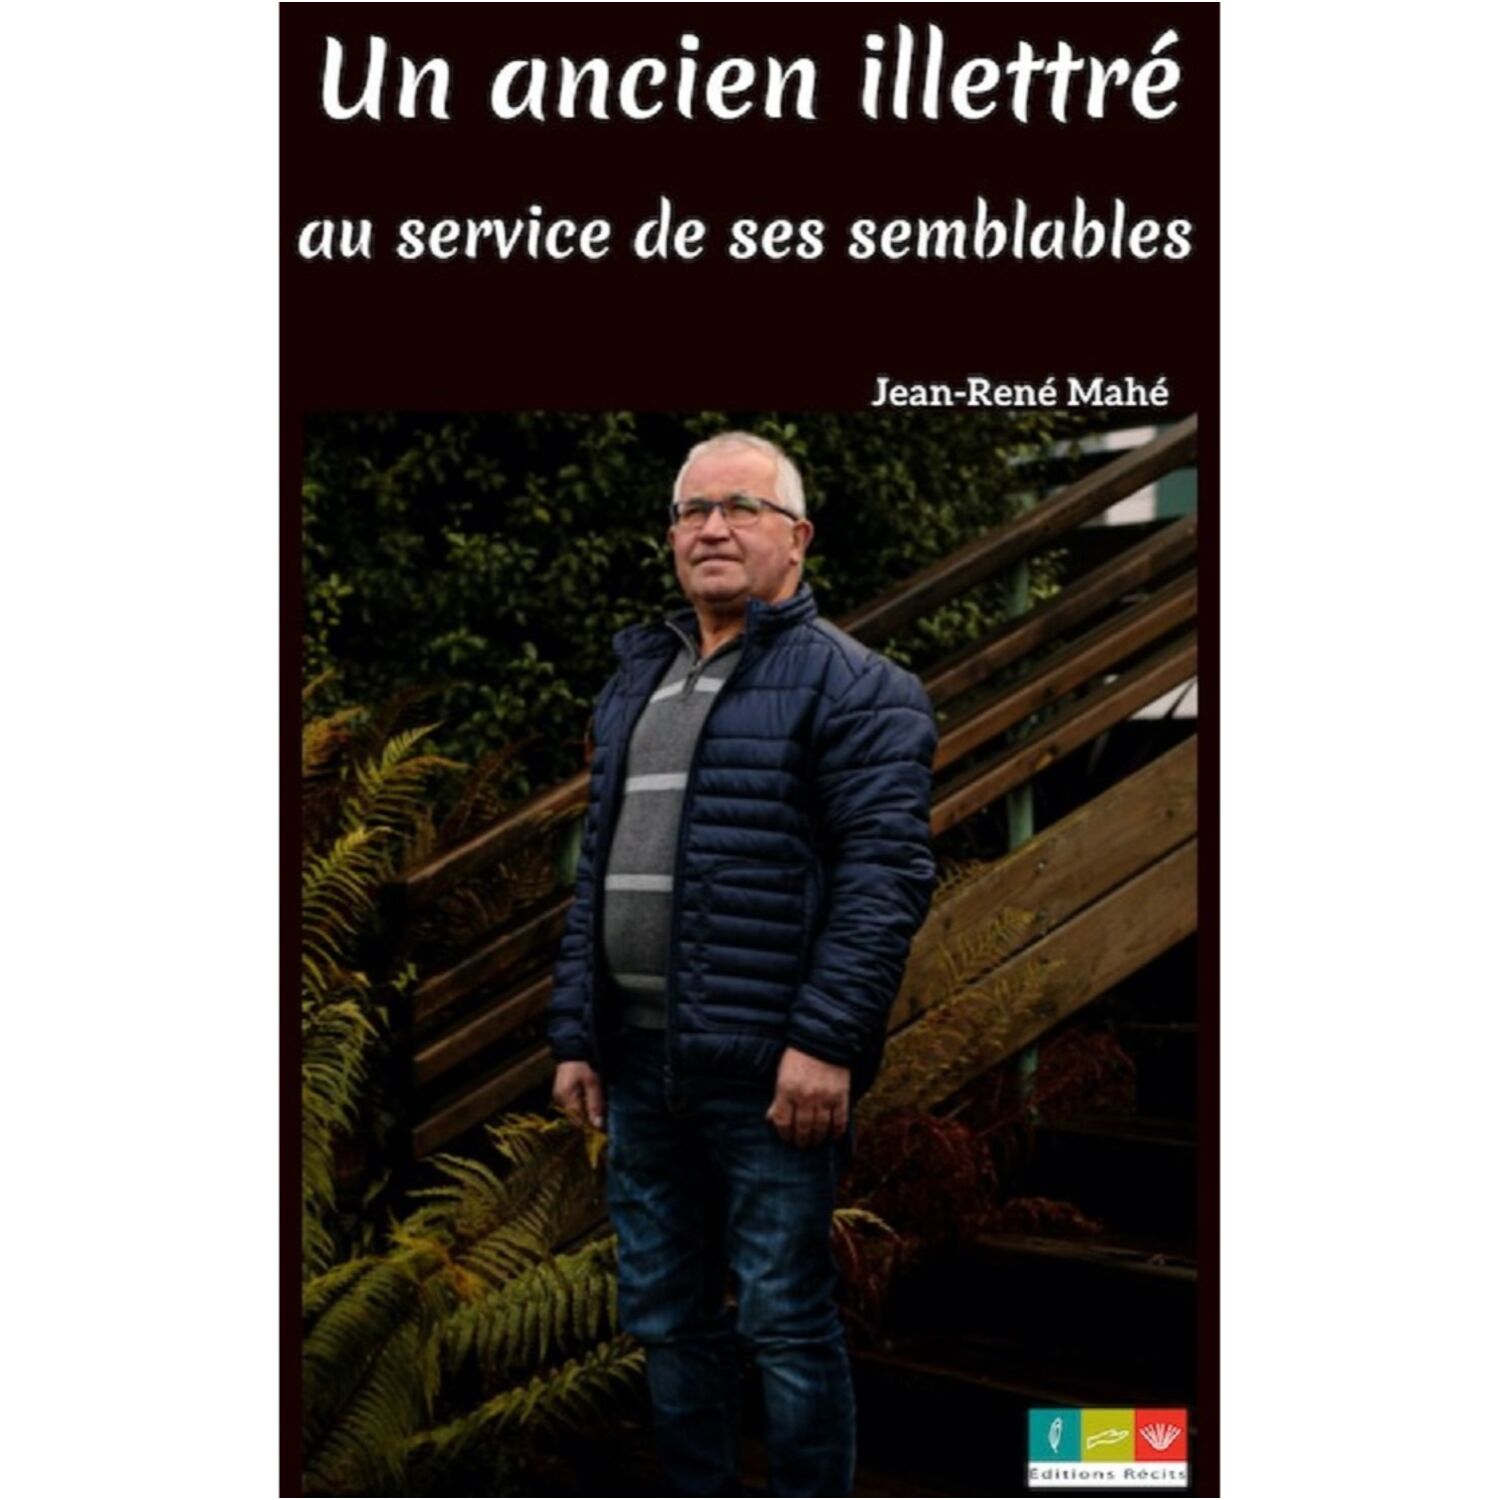 Jean René Mahé publie son 1er livre : un ancien illettré au service de ses semblables